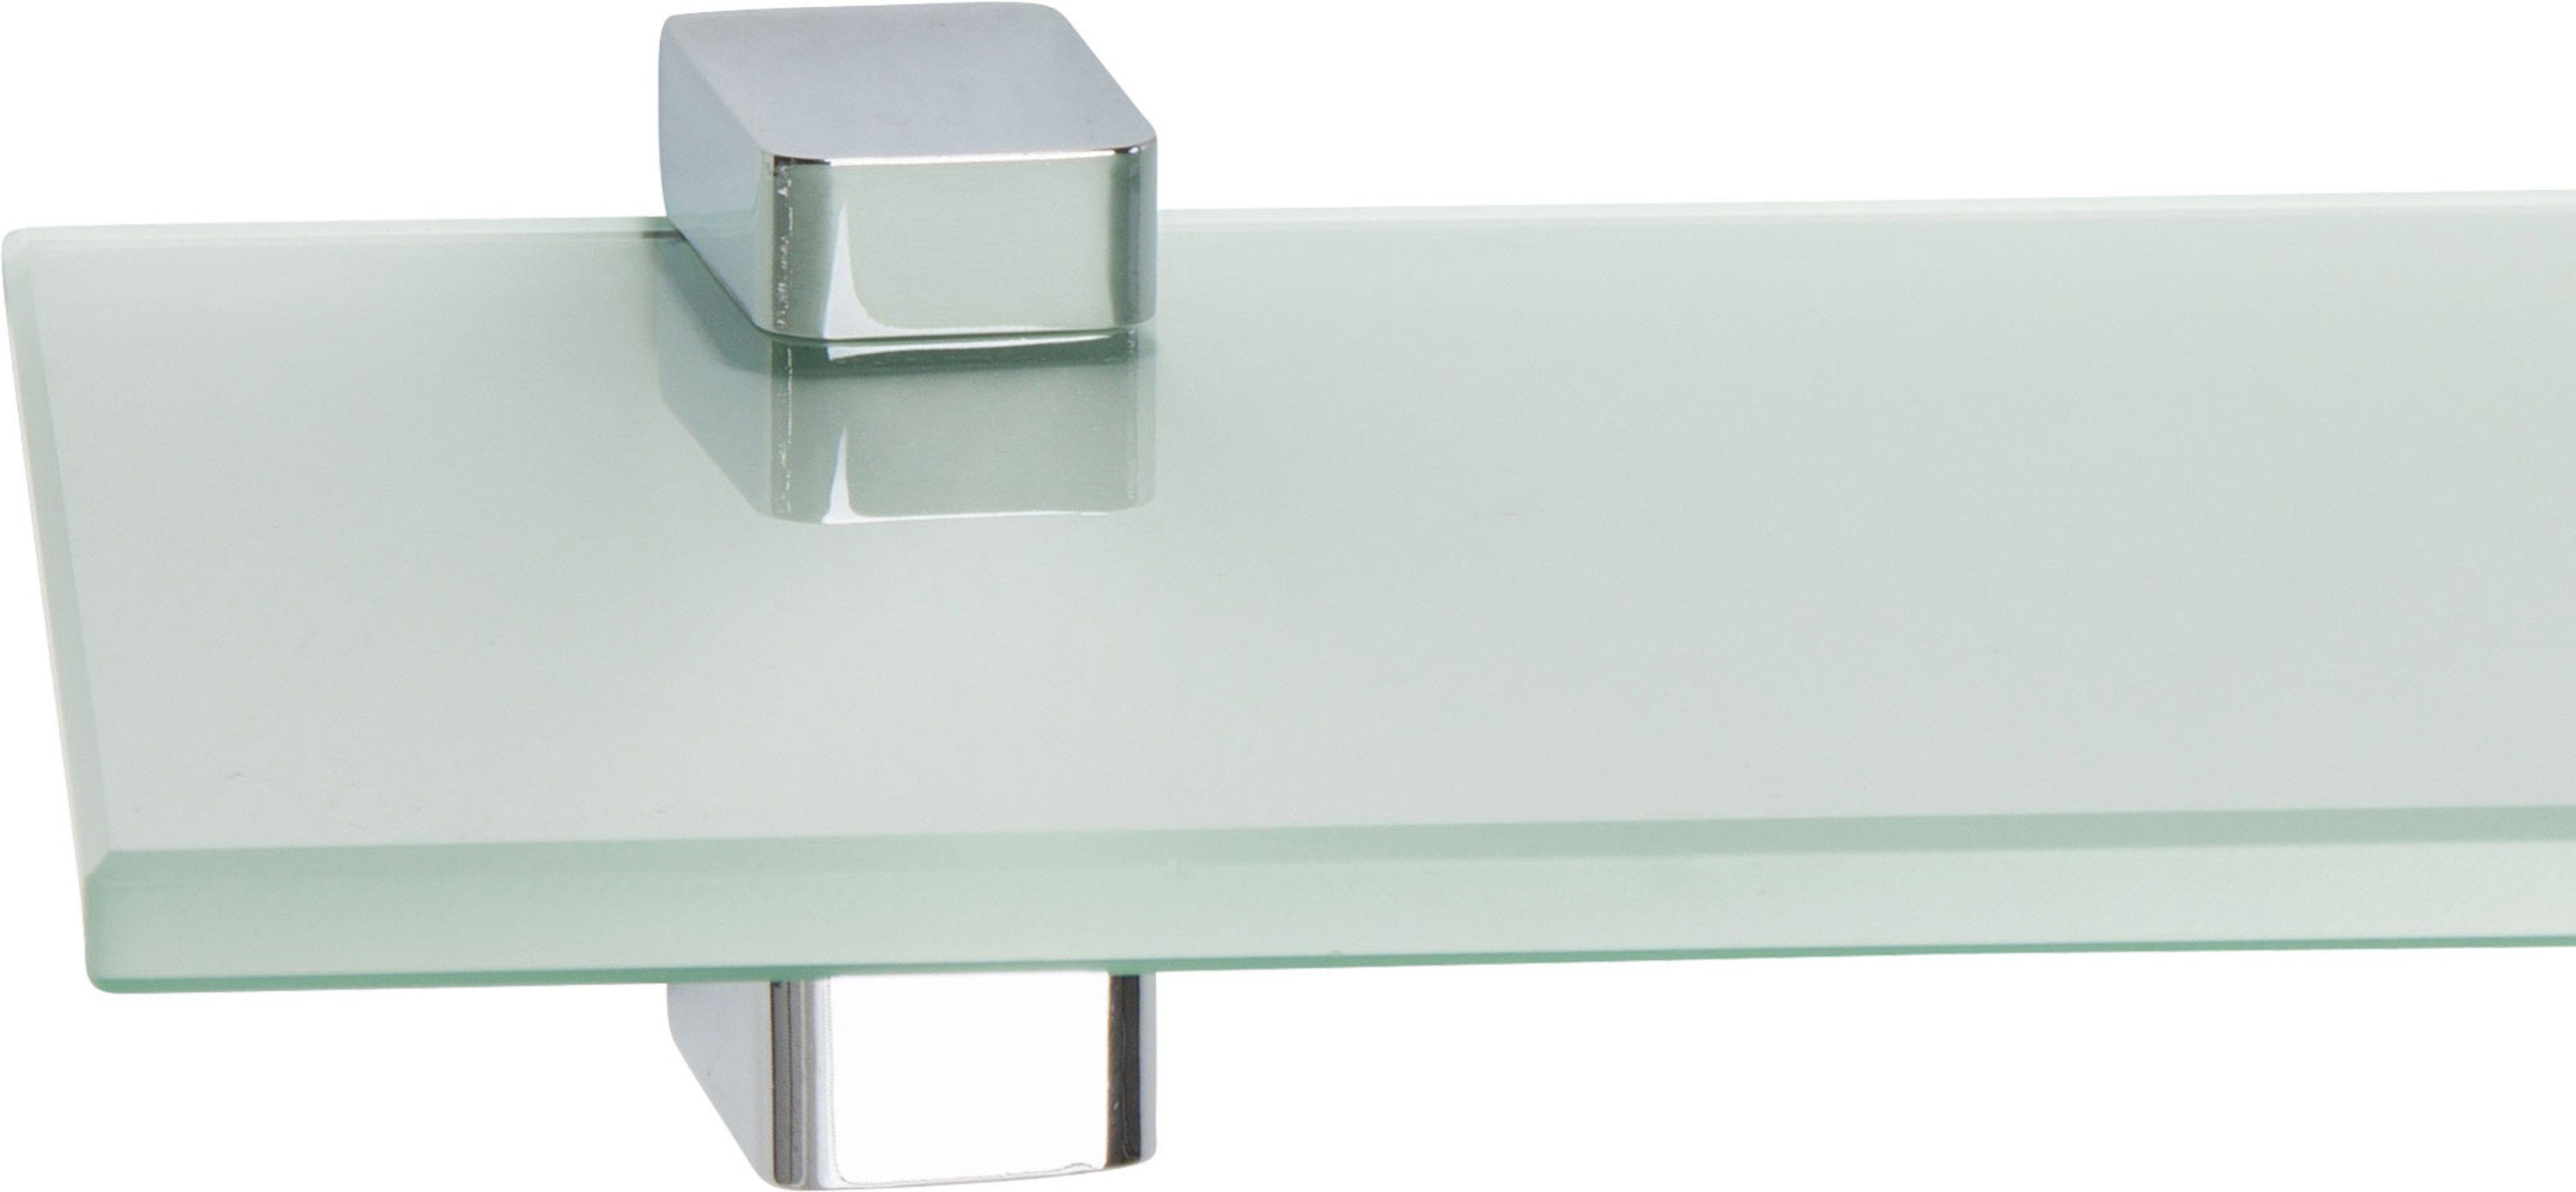 ib style Wandregal Glasregal 10mm satiniert 40 x 20 cm + Clip CONO Verchromt, Glasboden aus ESG-Sicherheitsglas - Wandregal